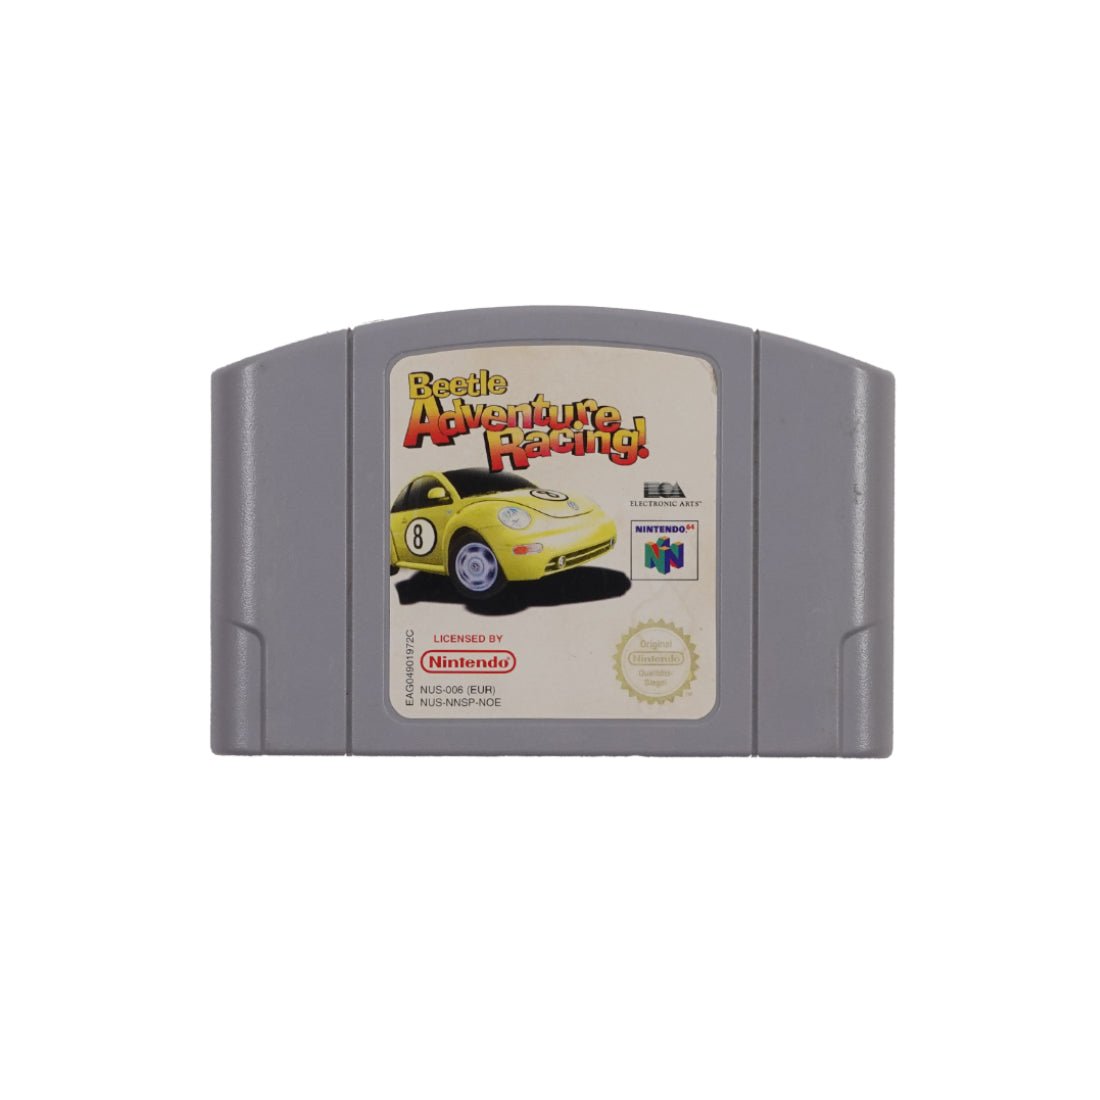 (Pre-Owned) Beetle Adventure Racing - Nintendo 64 - Store 974 | ستور ٩٧٤